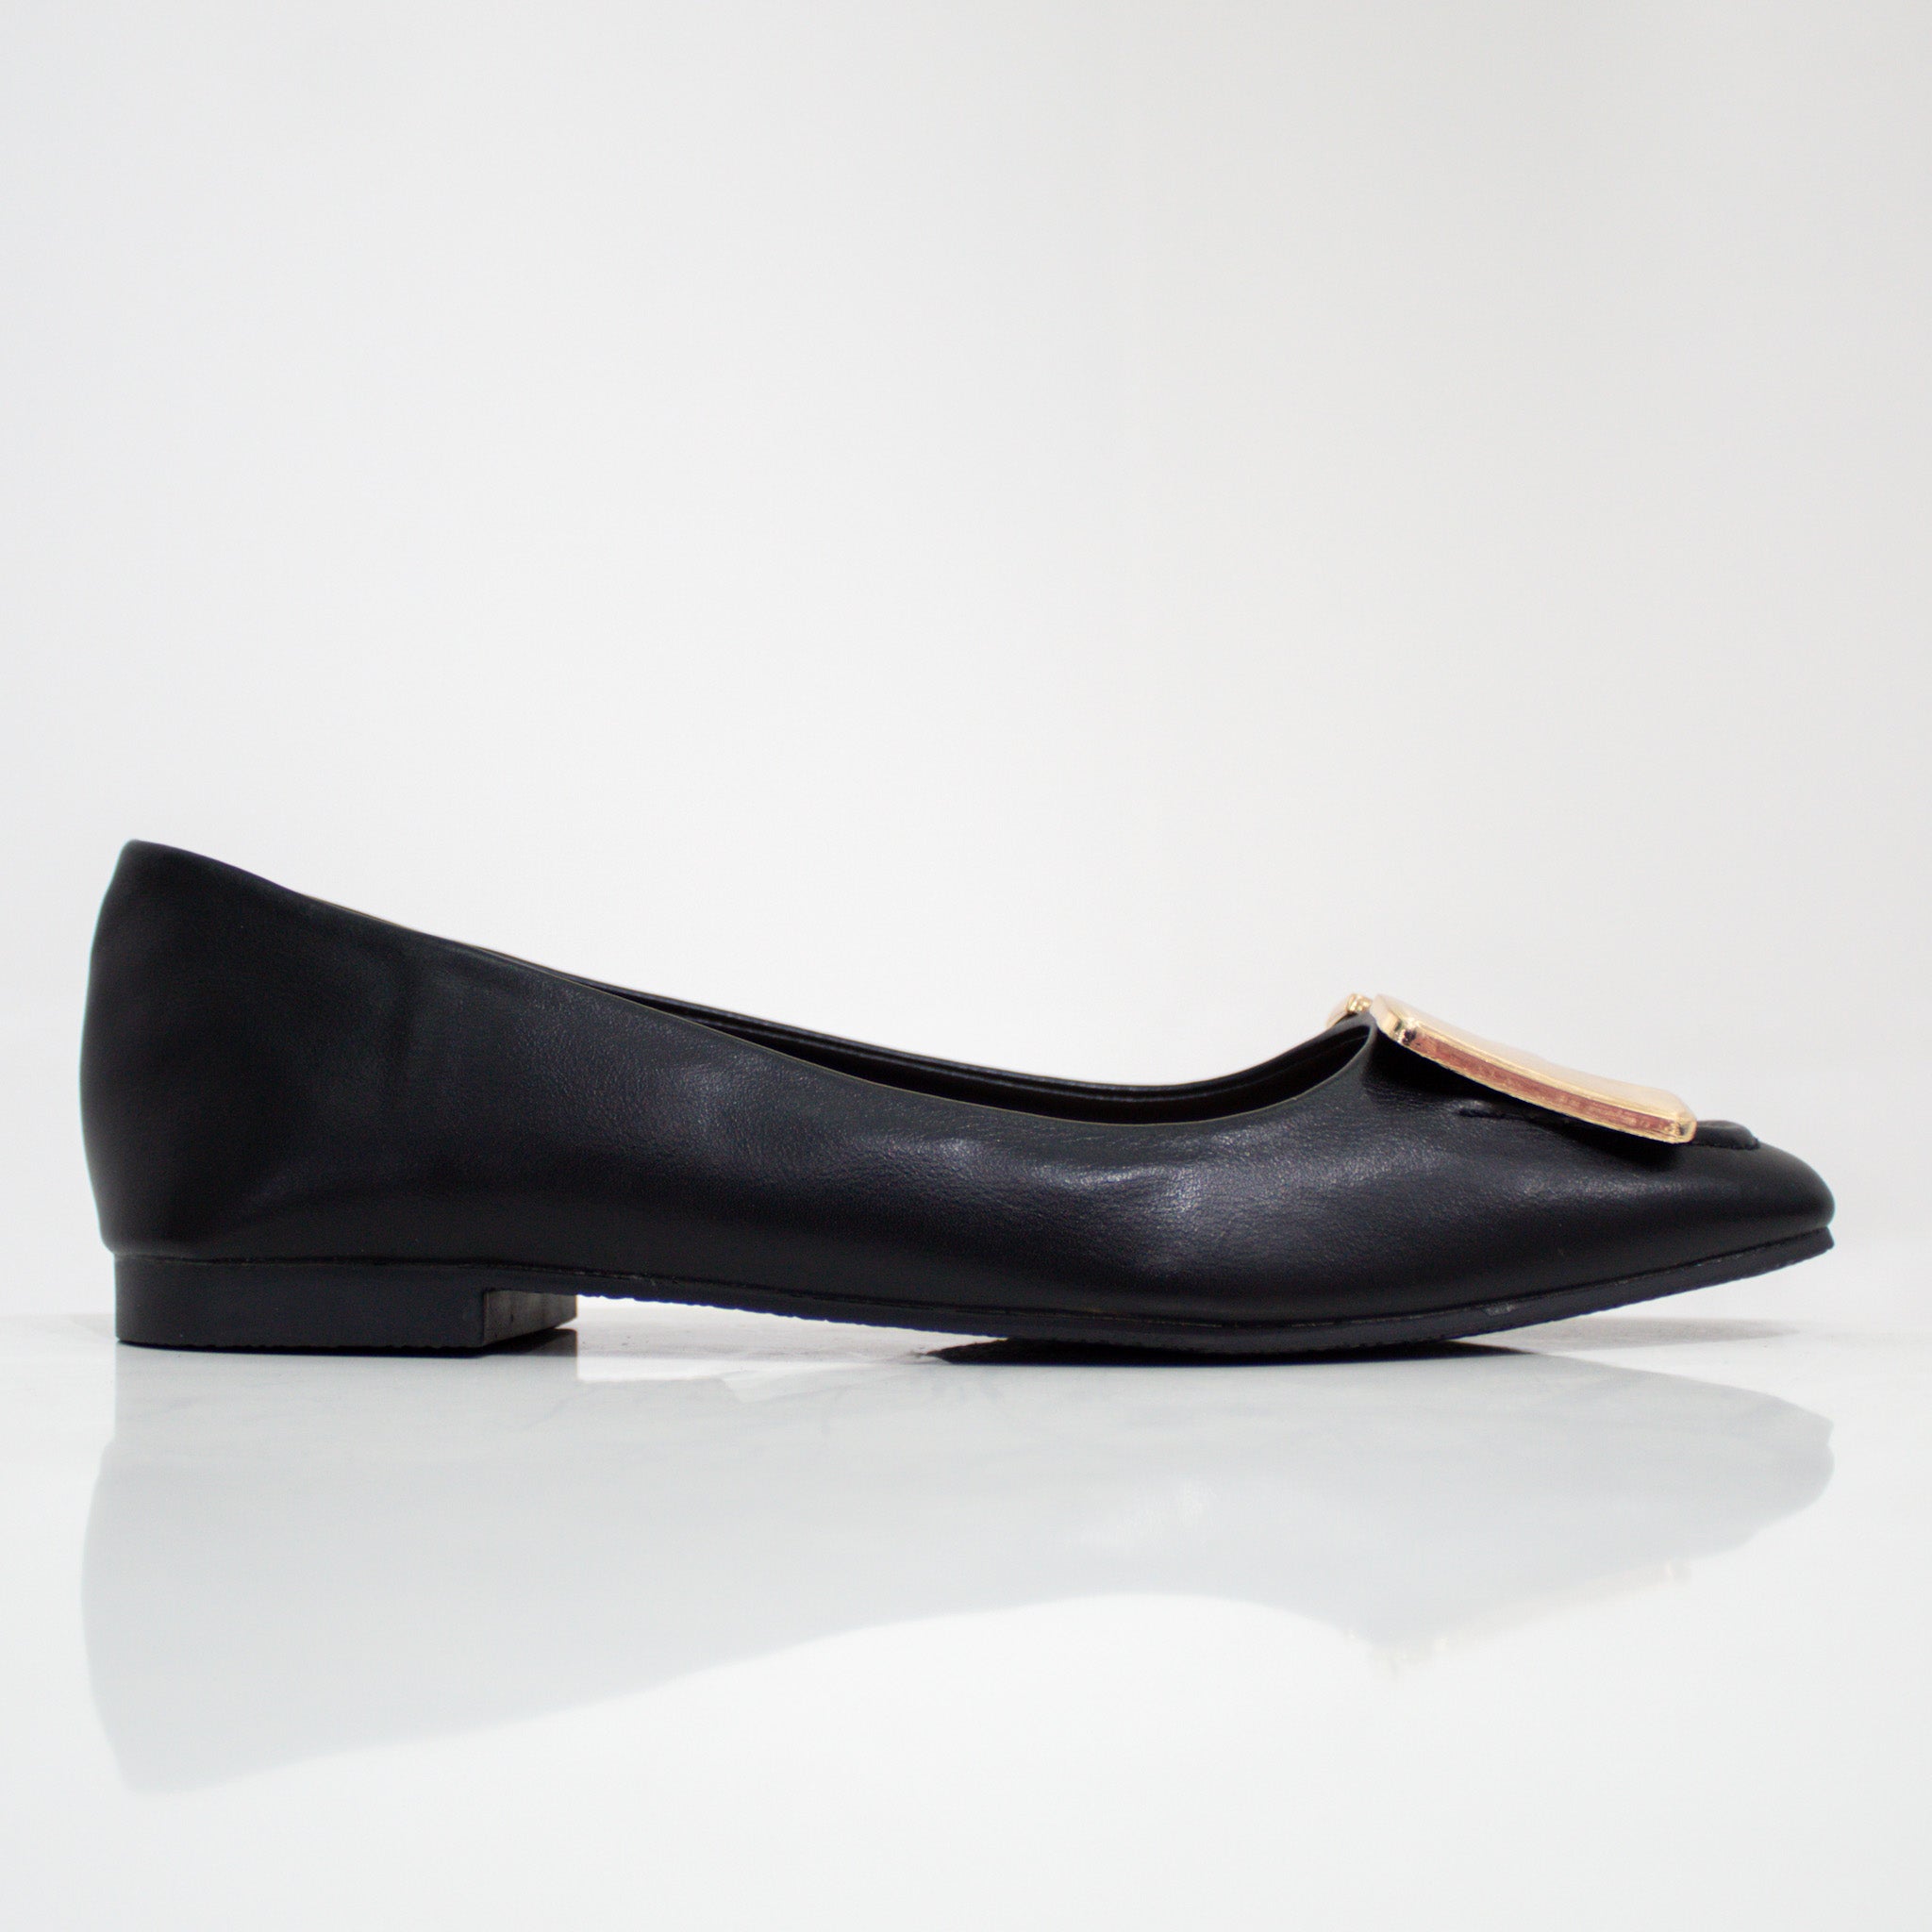 Alvira gold H-trim faux leather pump shoes black